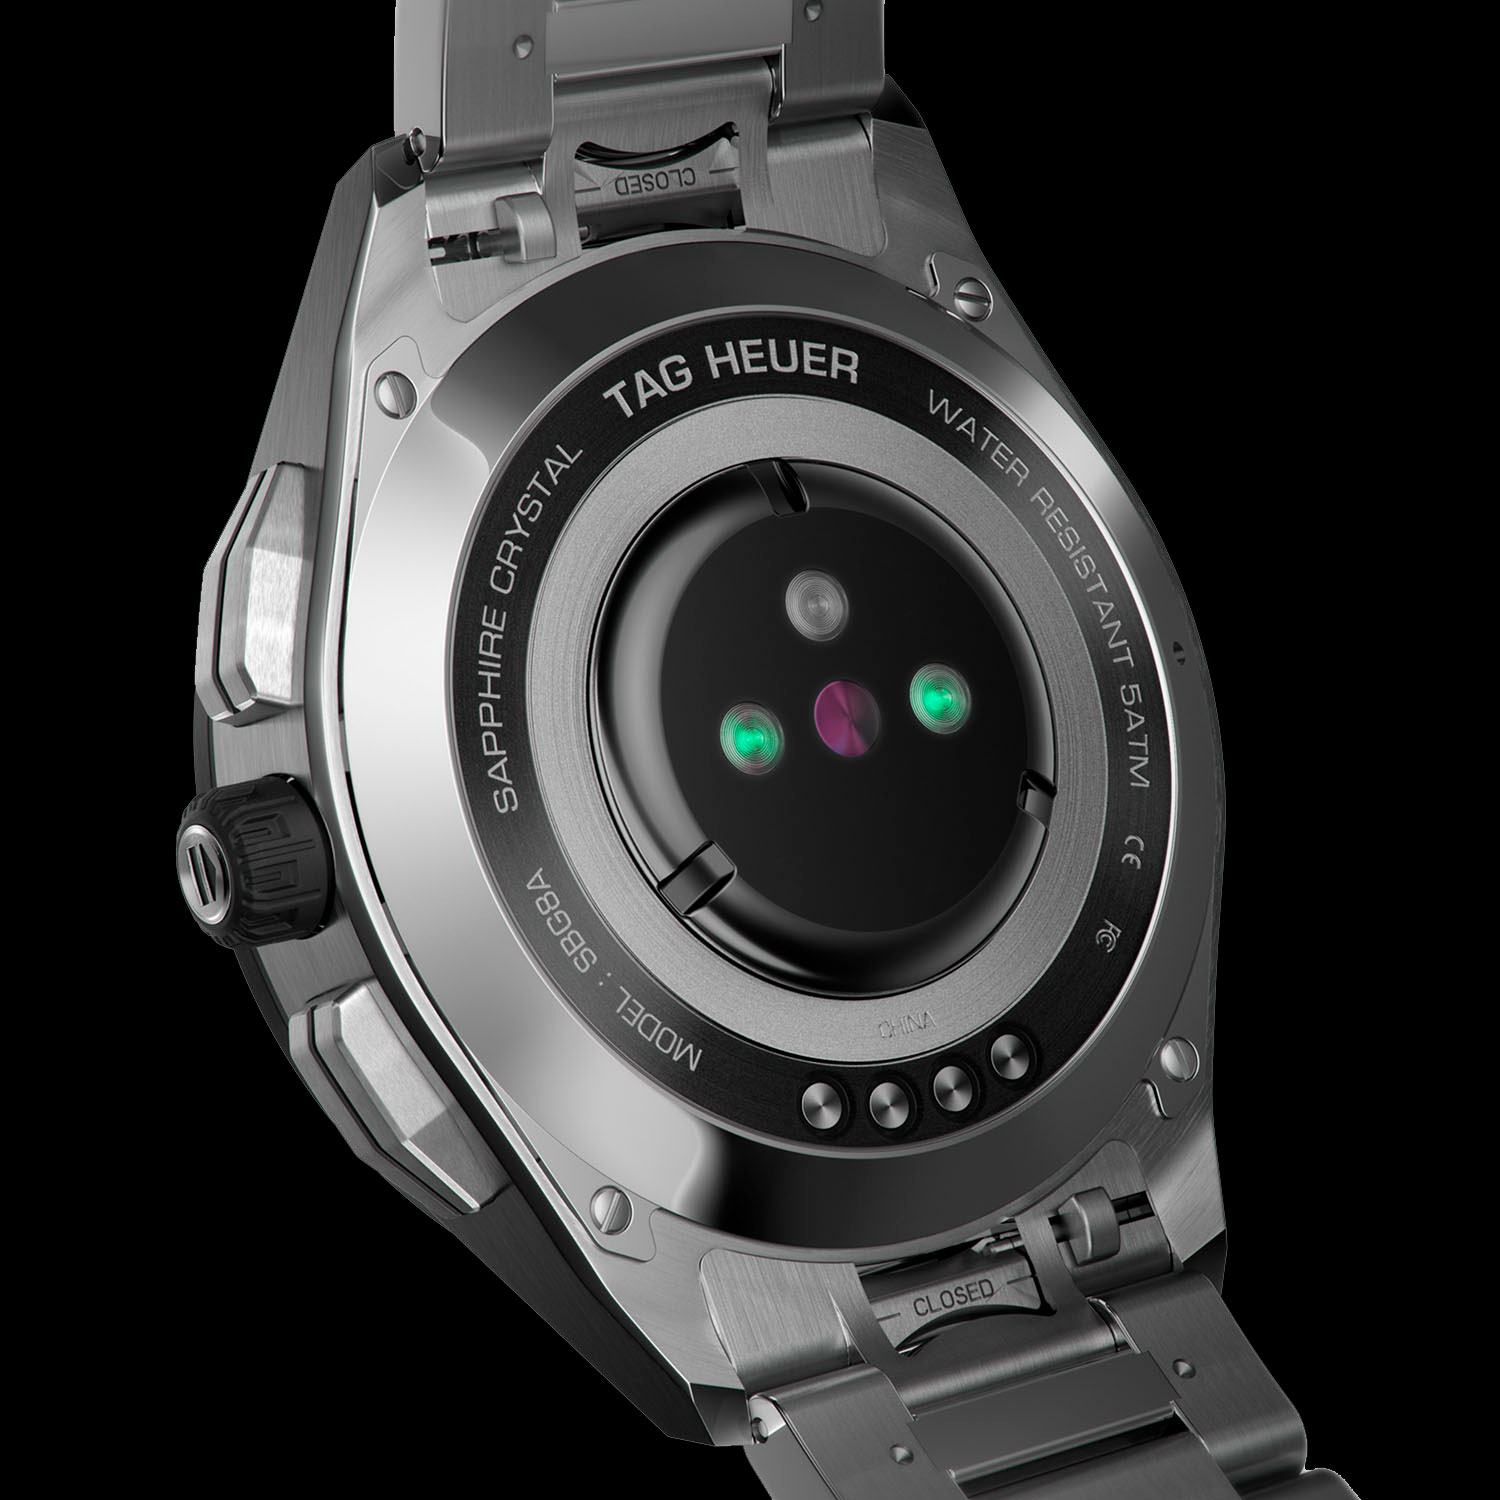 Sensores traseros del TAG Heuer Connected Watch 2020